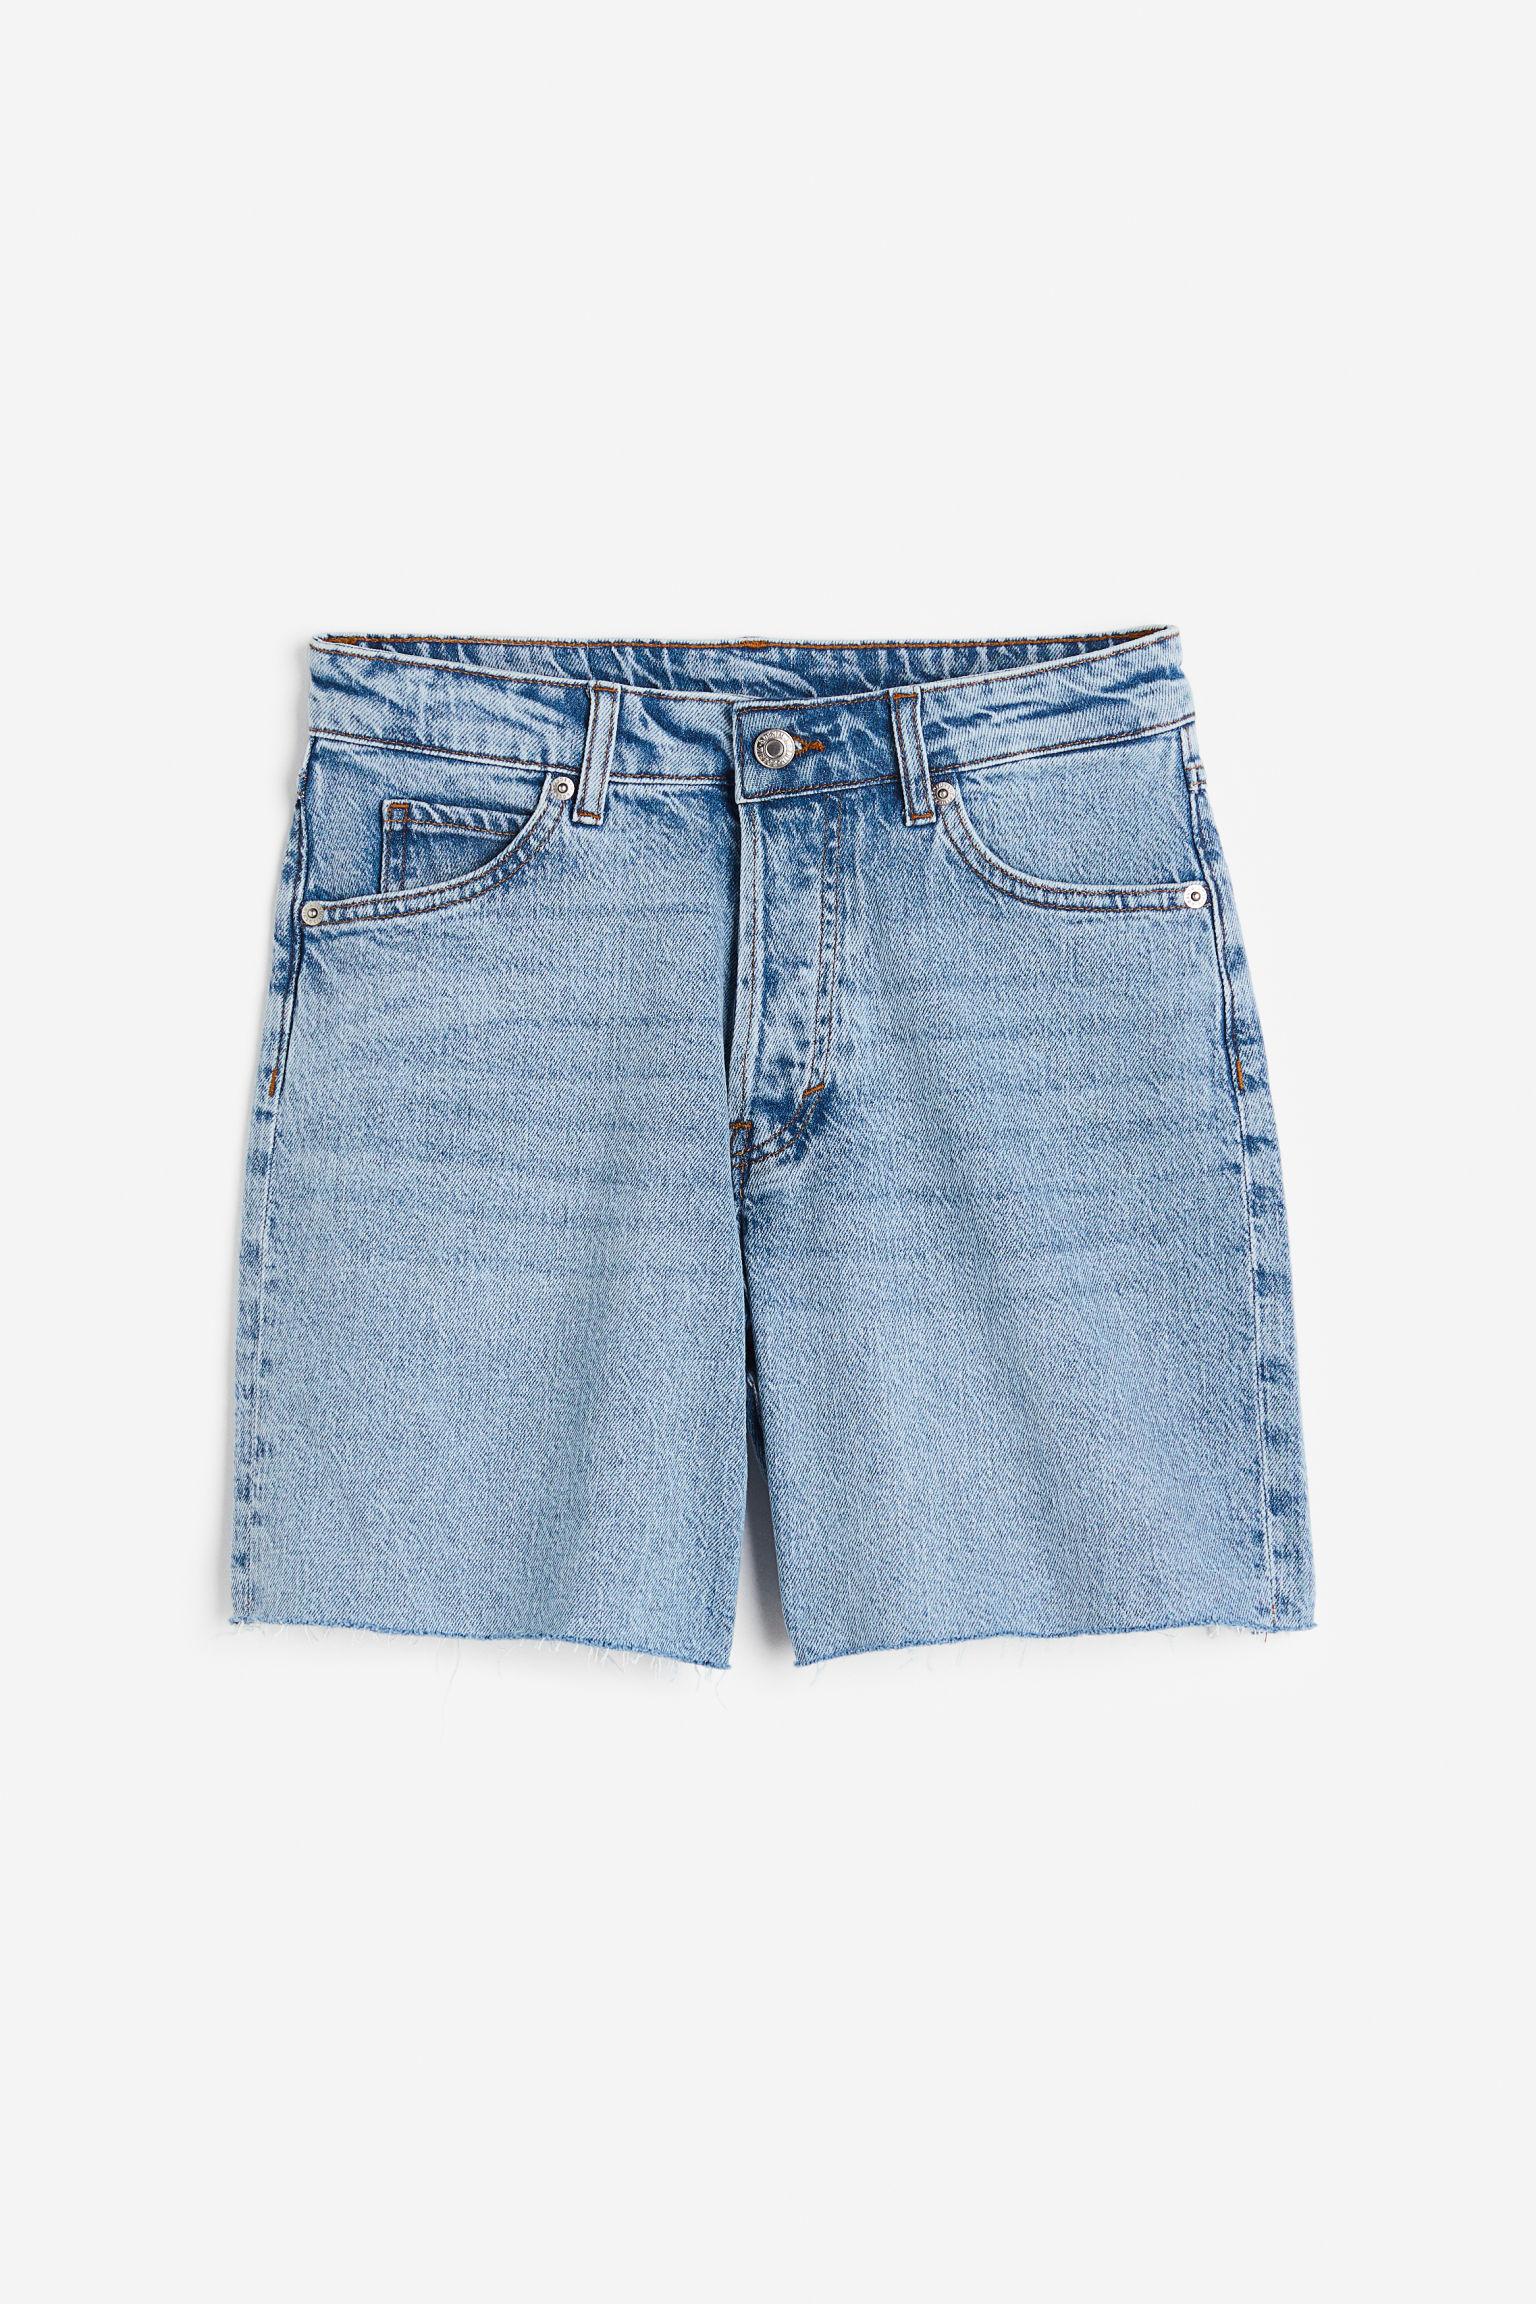 H&M 90s Cutoff High Waist Shorts in Blue | Lyst Canada